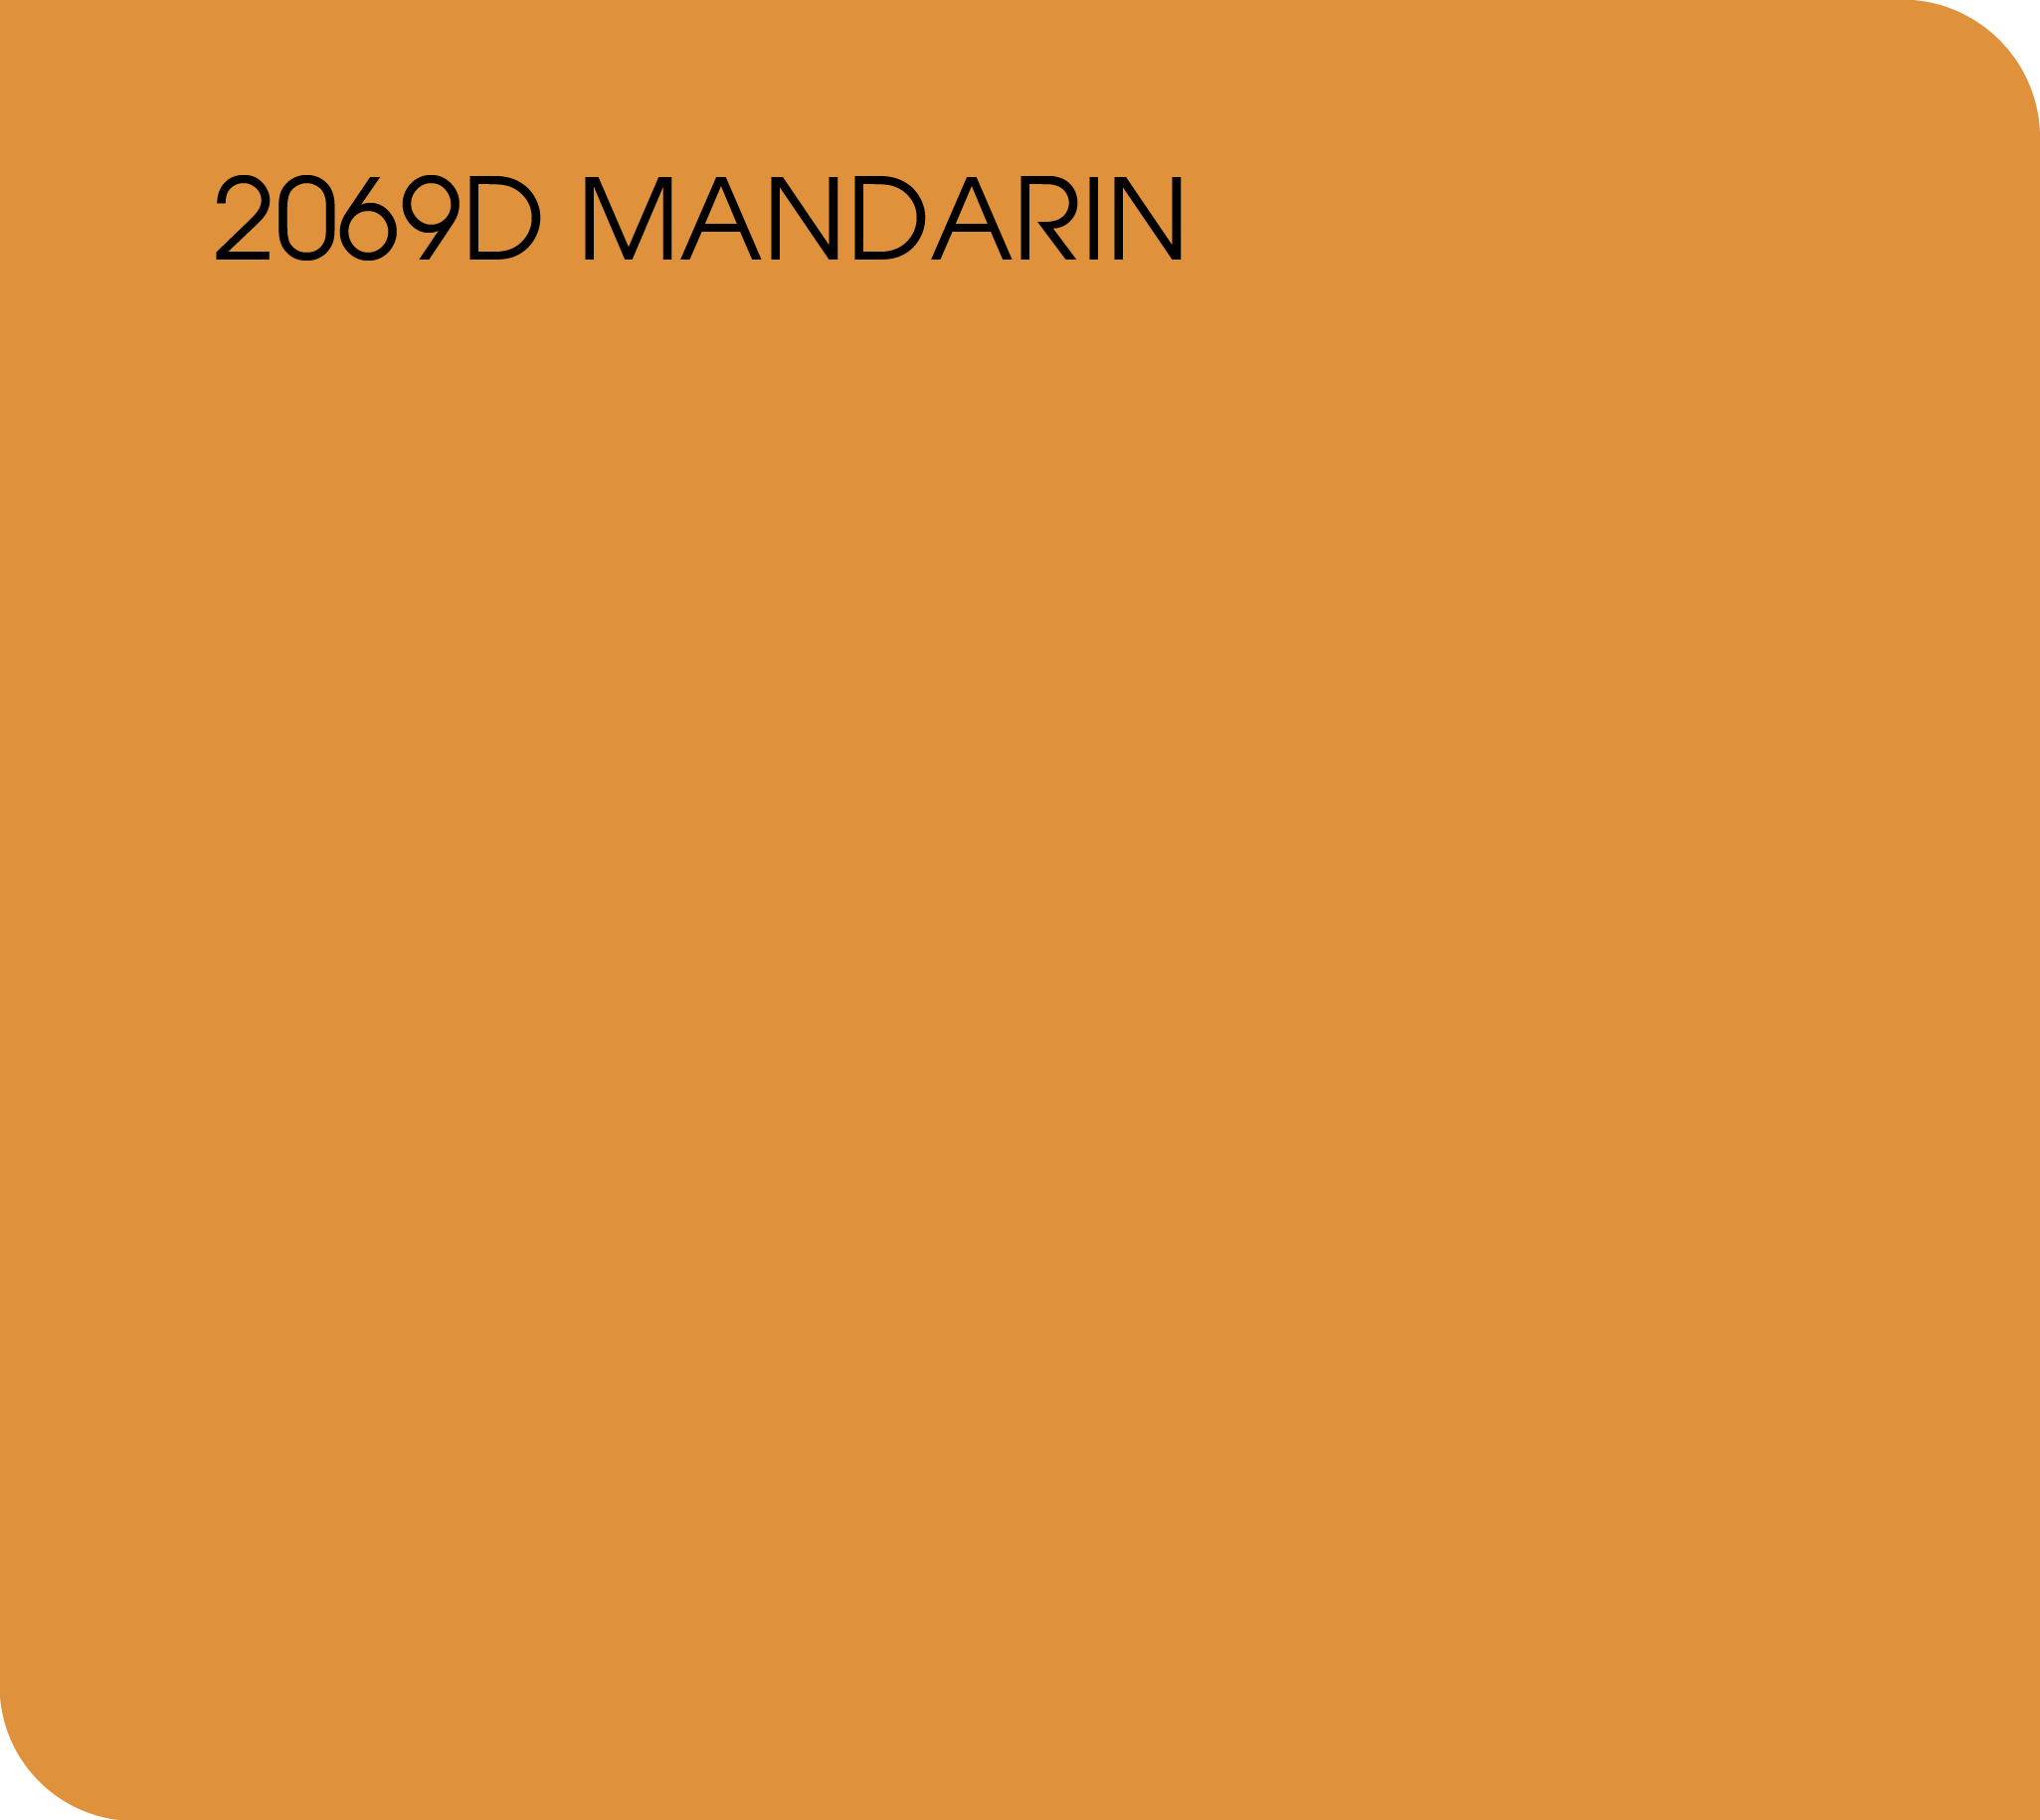 mandarin 2069D